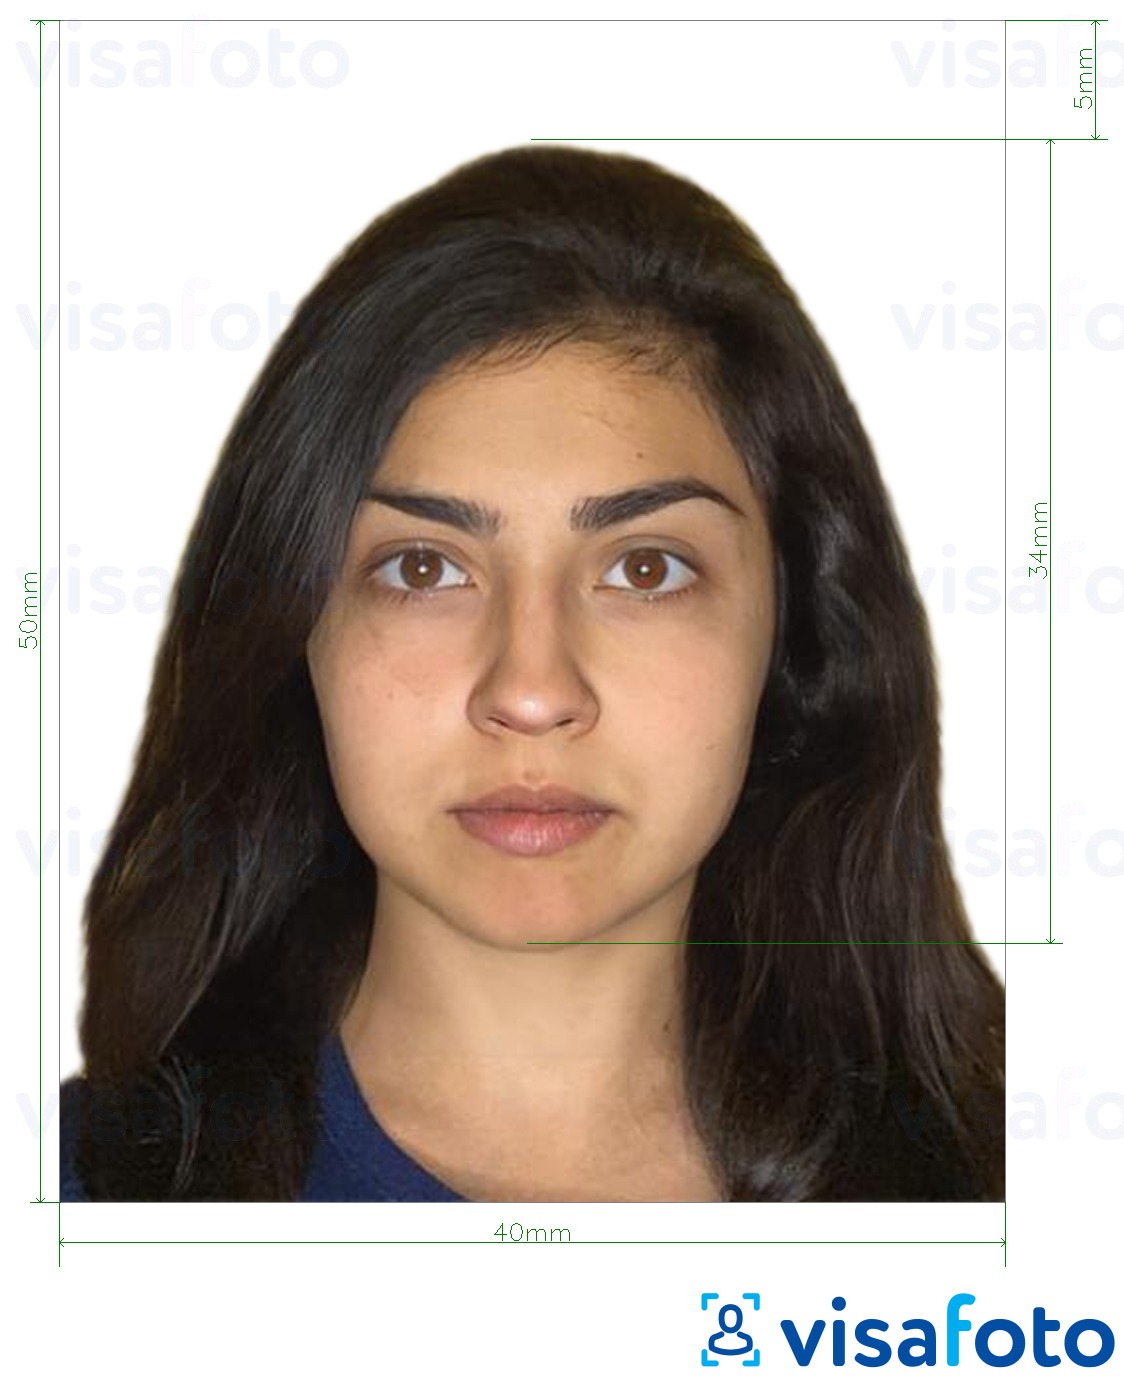 सटीक आकार विनिर्देश के साथ बोलीविया पासपोर्ट 4x5 सेमी के लिए तस्वीर का उदाहरण